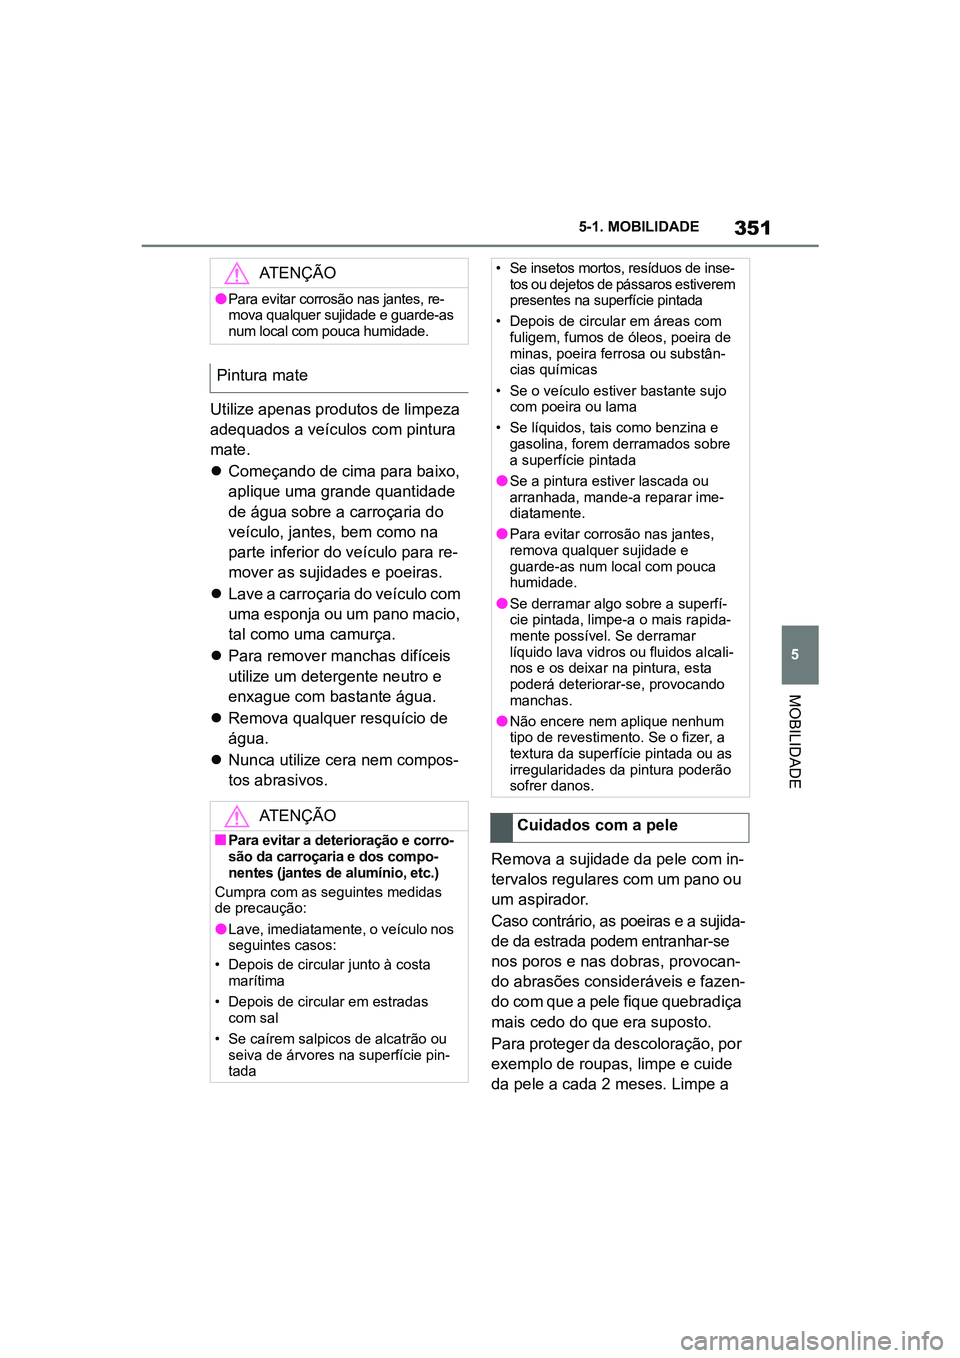 TOYOTA SUPRA 2019  Manual de utilização (in Portuguese) 351
5
Supra Owner's Manual 5-1. MOBILIDADE
MOBILIDADE
Utilize apenas produtos de limpeza 
adequados a veículos com pintura 
mate. 

Começando de cima para baixo, 
a

plique uma grande quantid